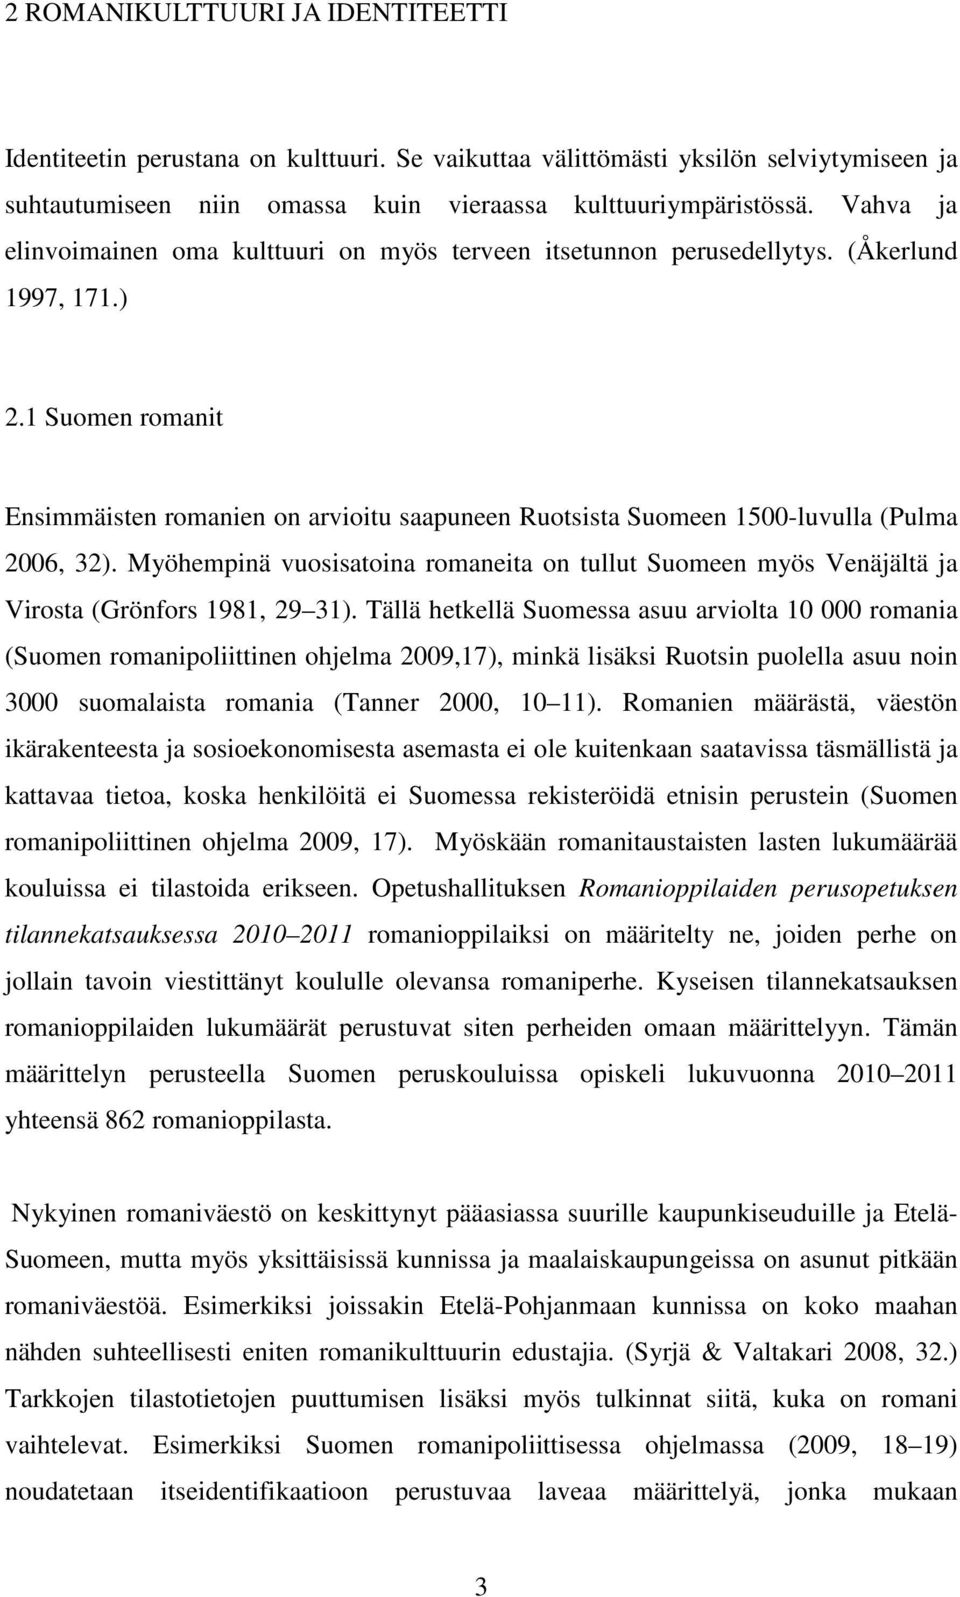 1 Suomen romanit Ensimmäisten romanien on arvioitu saapuneen Ruotsista Suomeen 1500-luvulla (Pulma 2006, 32).